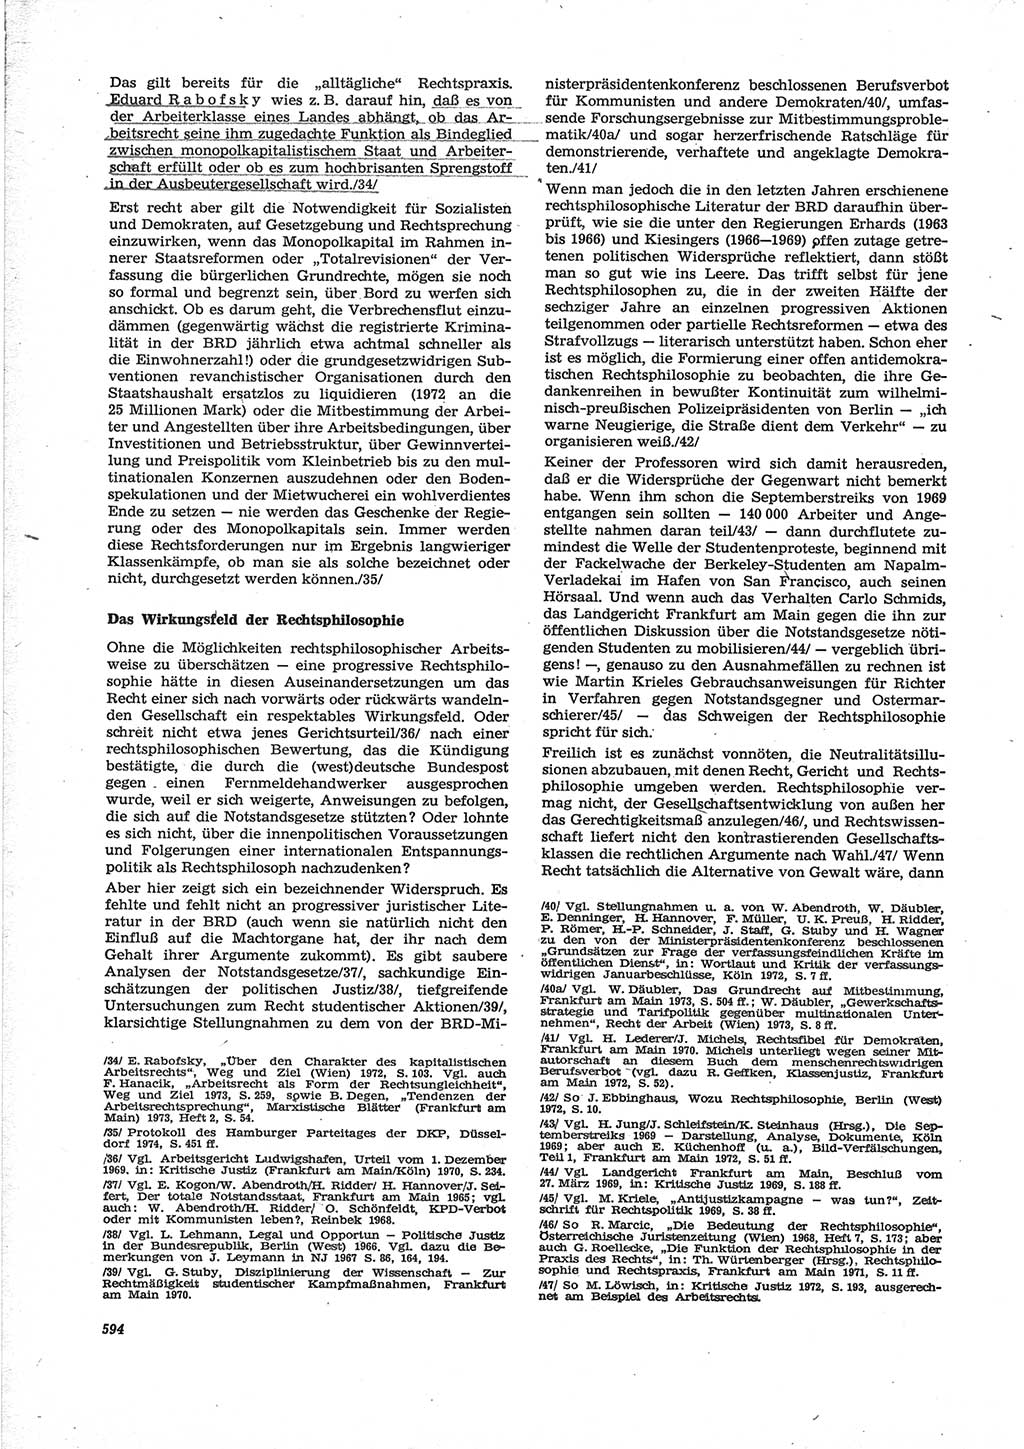 Neue Justiz (NJ), Zeitschrift für Recht und Rechtswissenschaft [Deutsche Demokratische Republik (DDR)], 28. Jahrgang 1974, Seite 594 (NJ DDR 1974, S. 594)